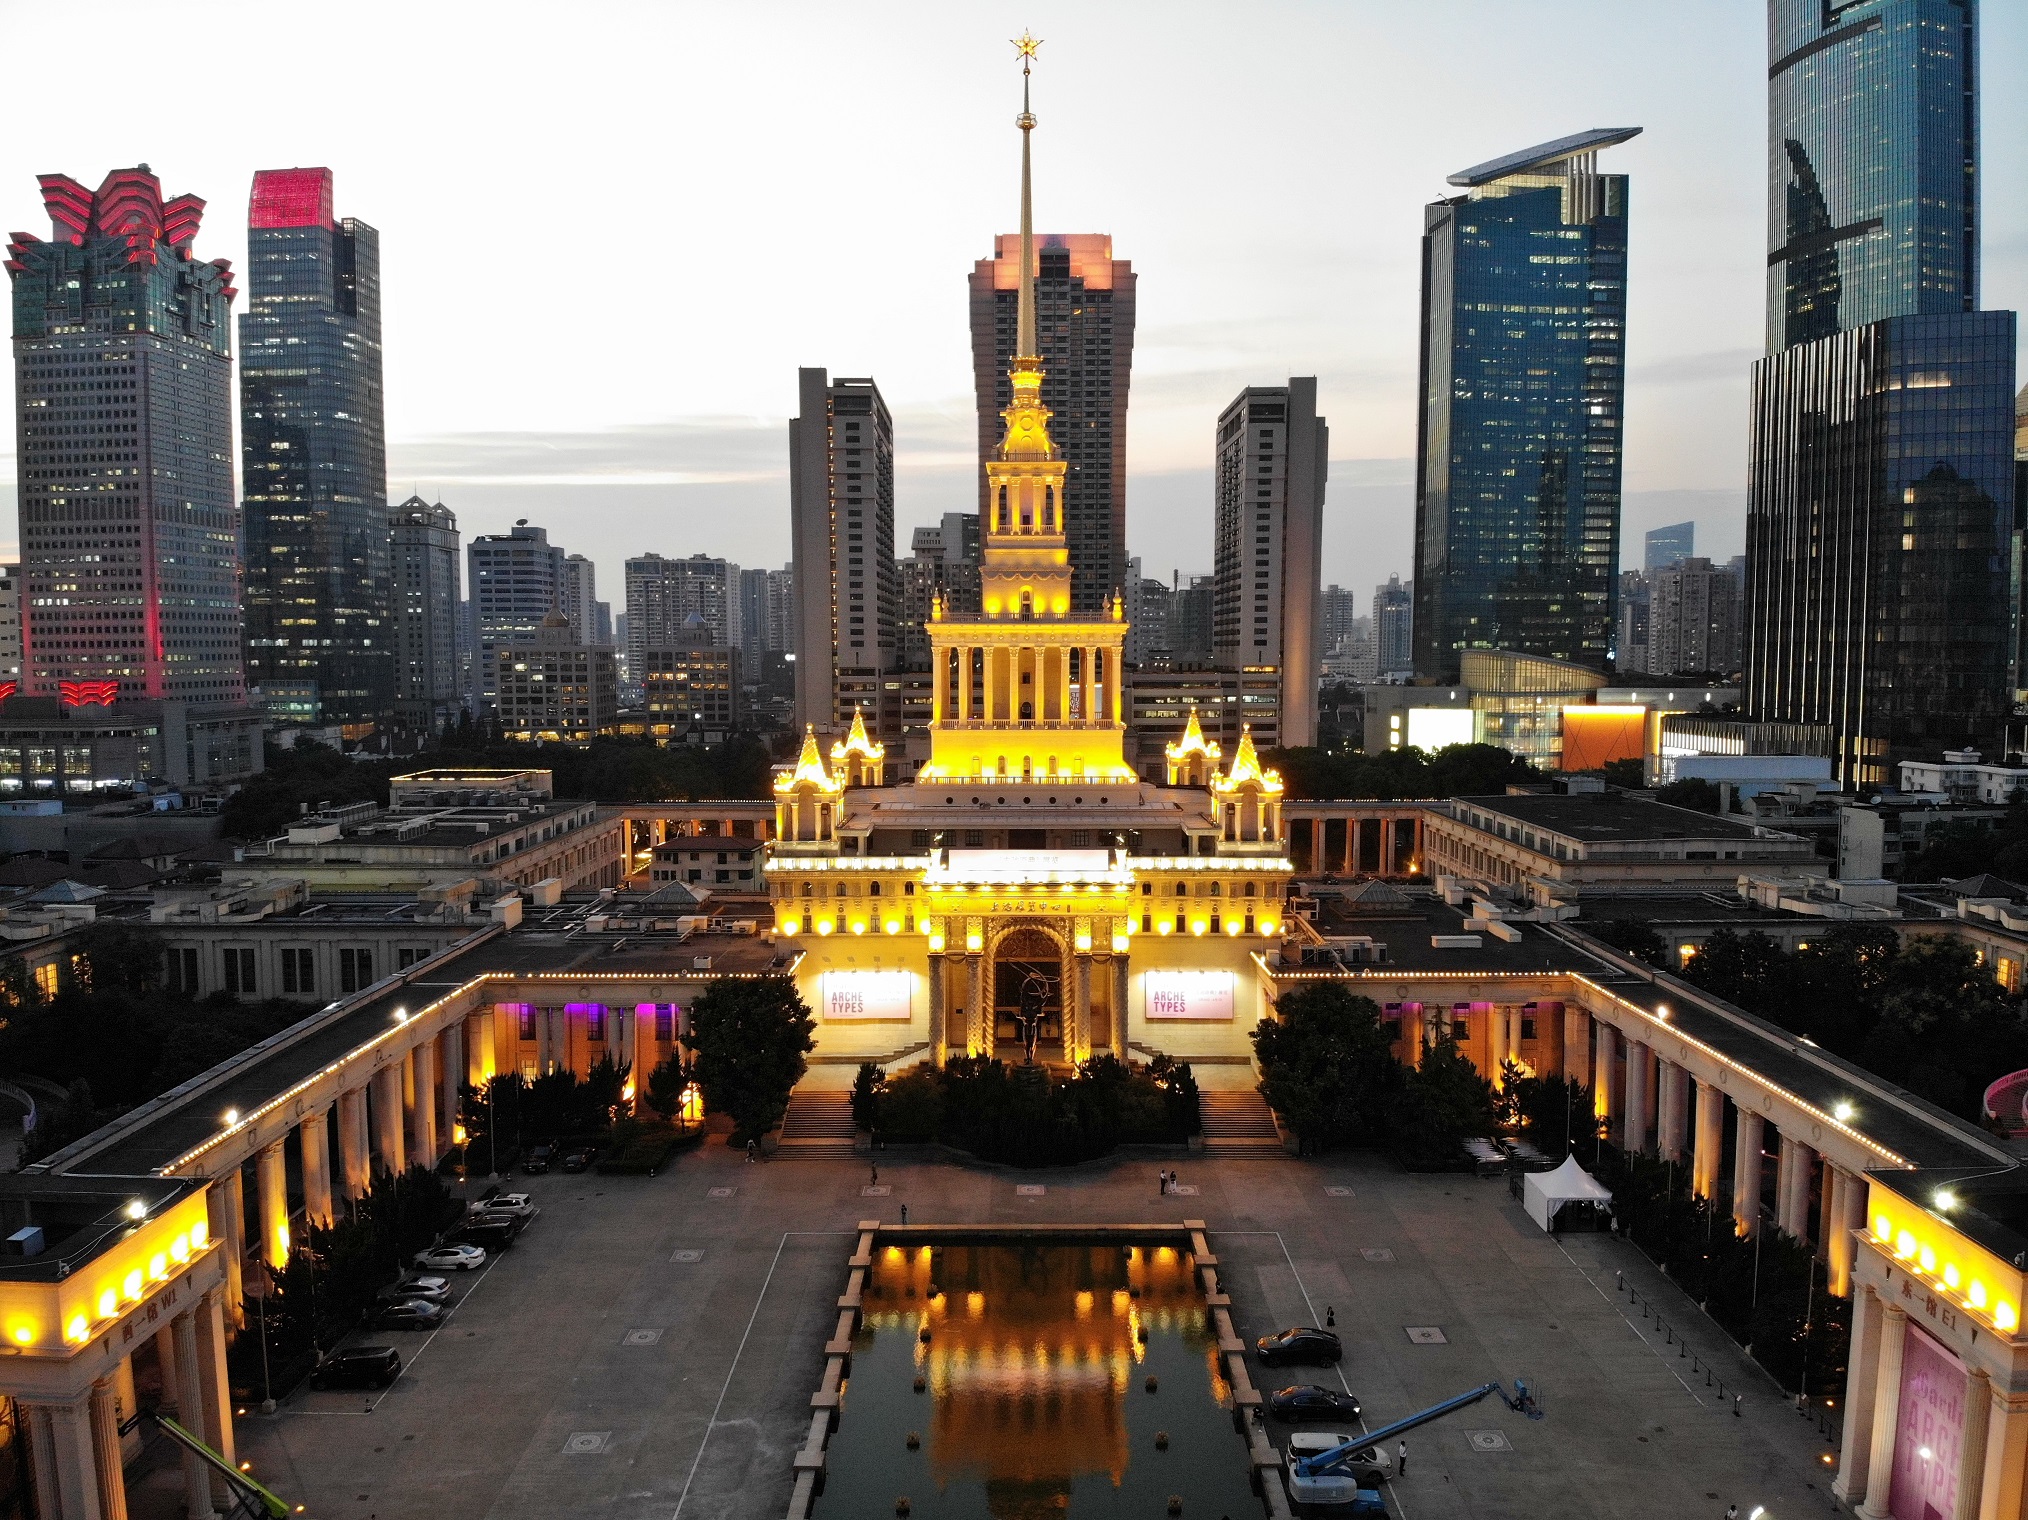 上海展览中心夜景图片